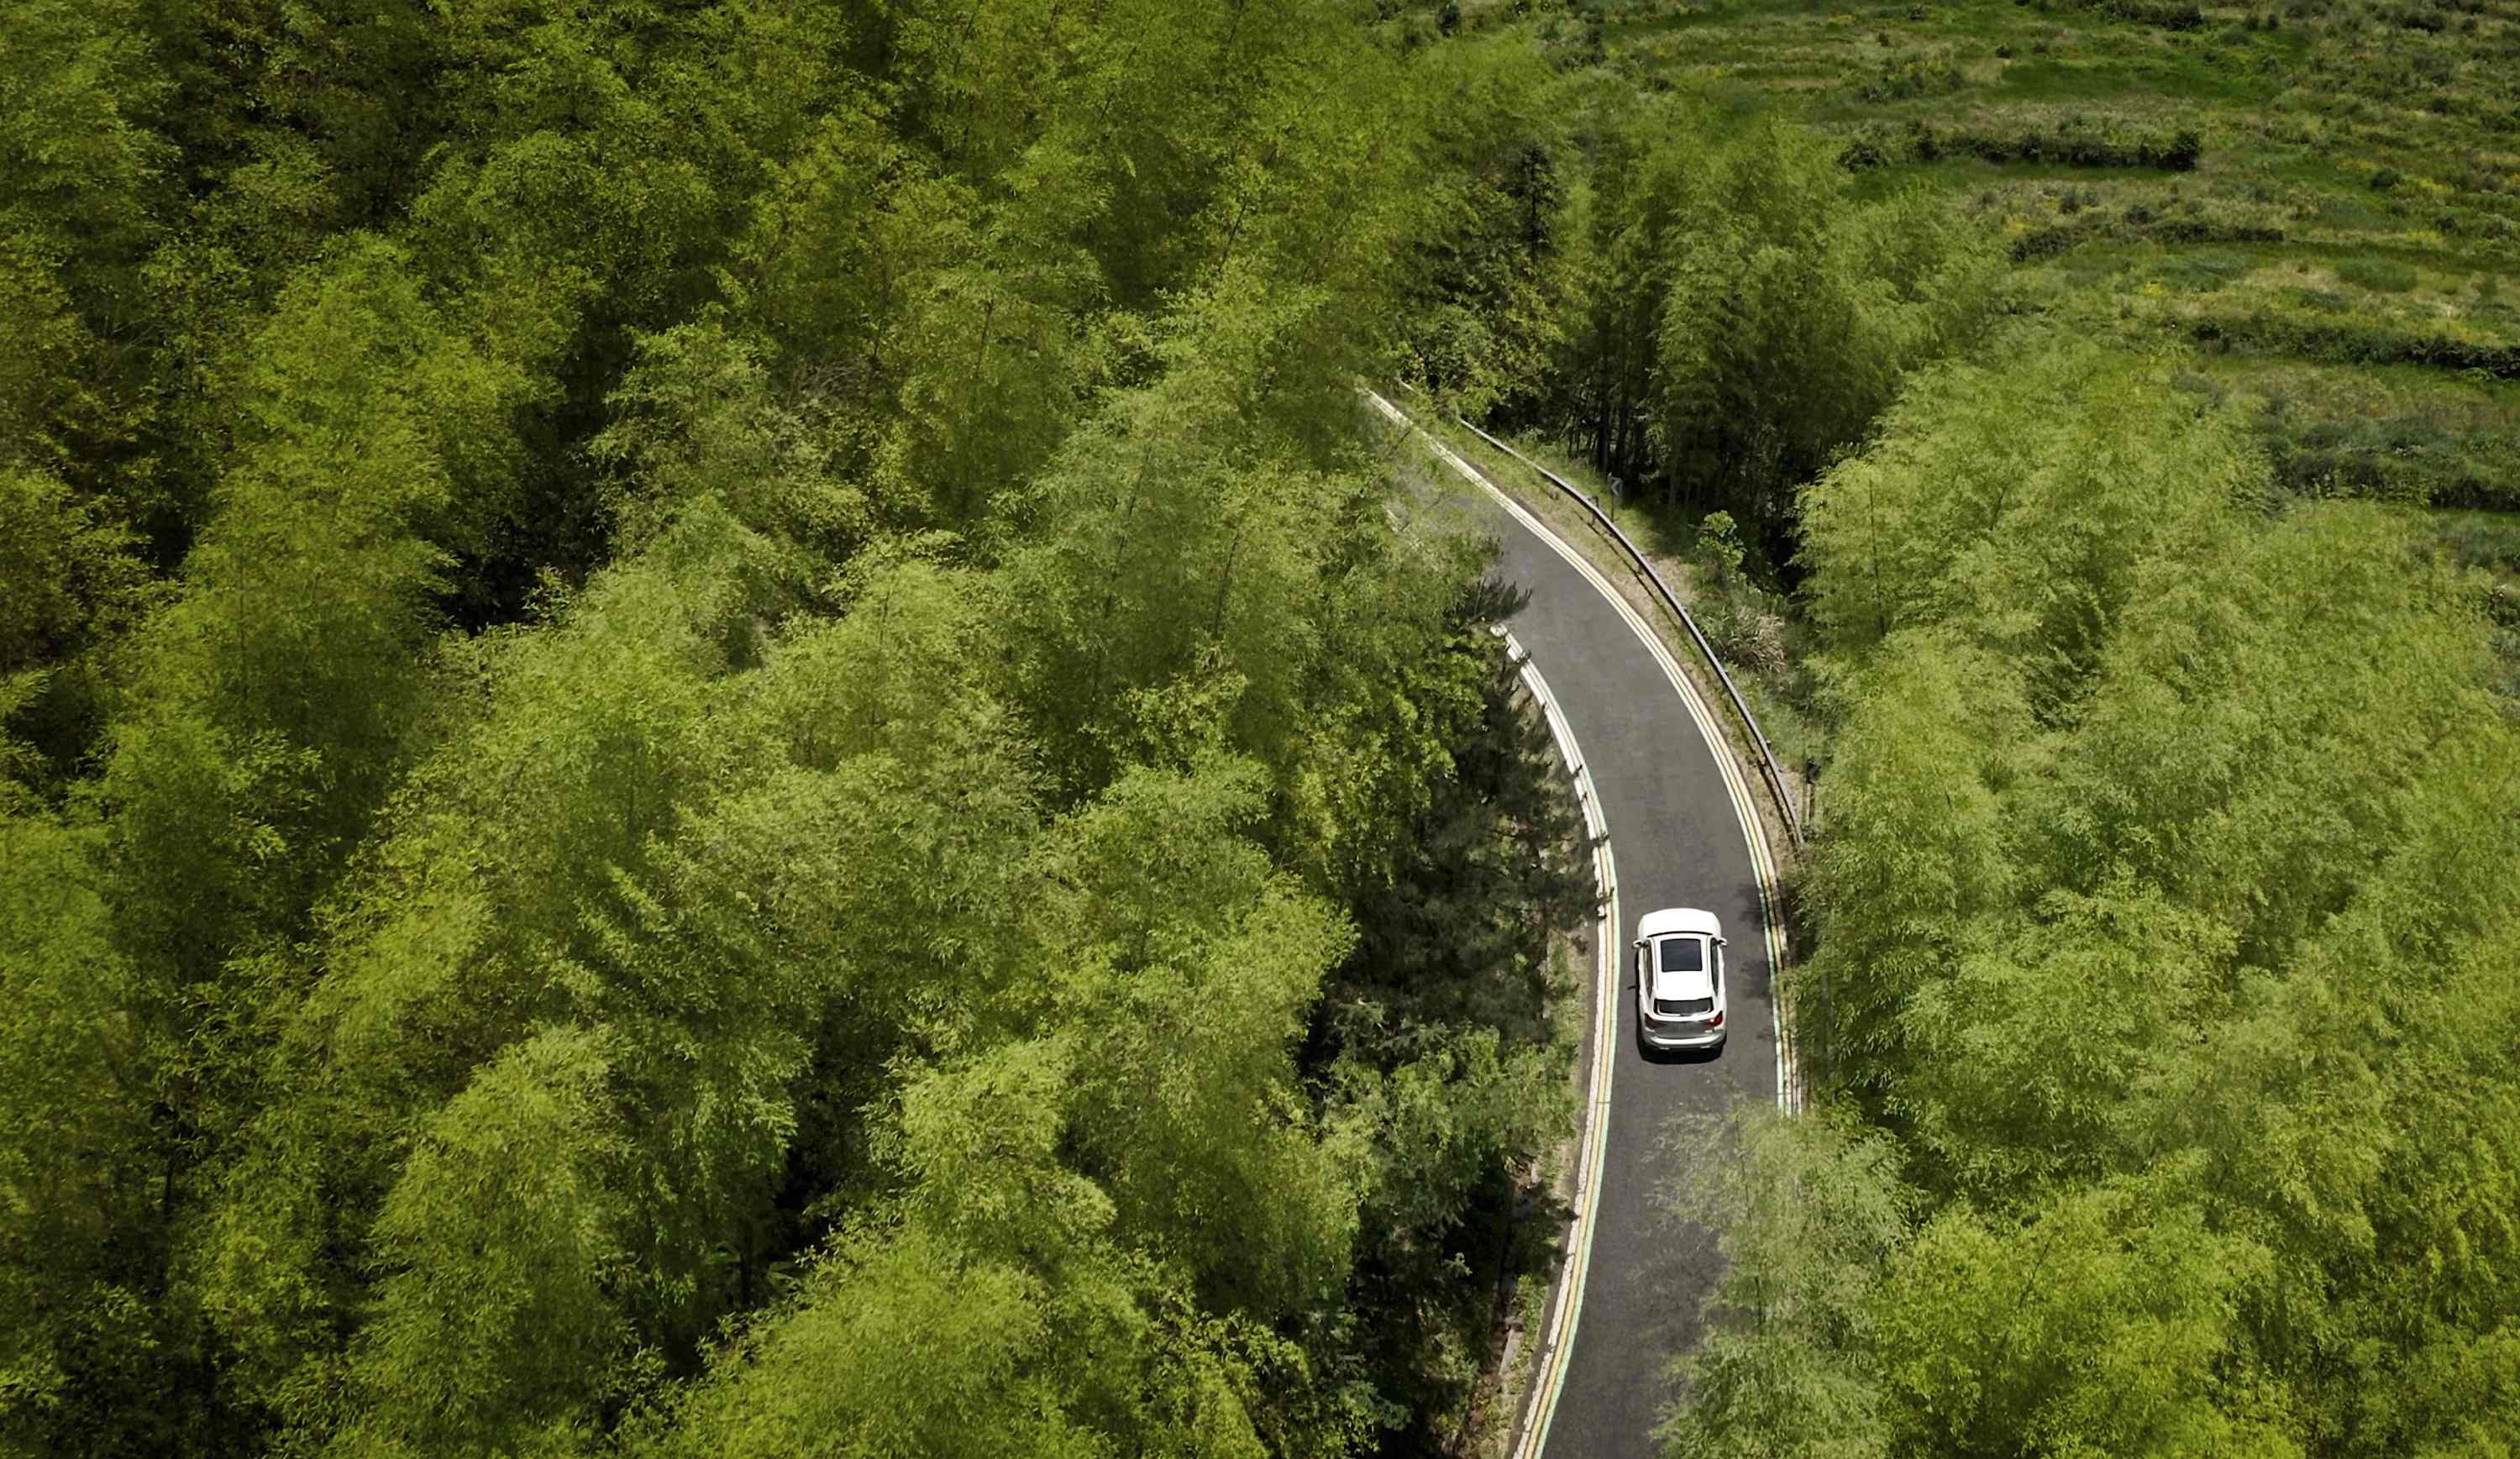 「绿色工厂」创新纯电动BMW iX3探索绿色自然之旅 携手共创低碳未来